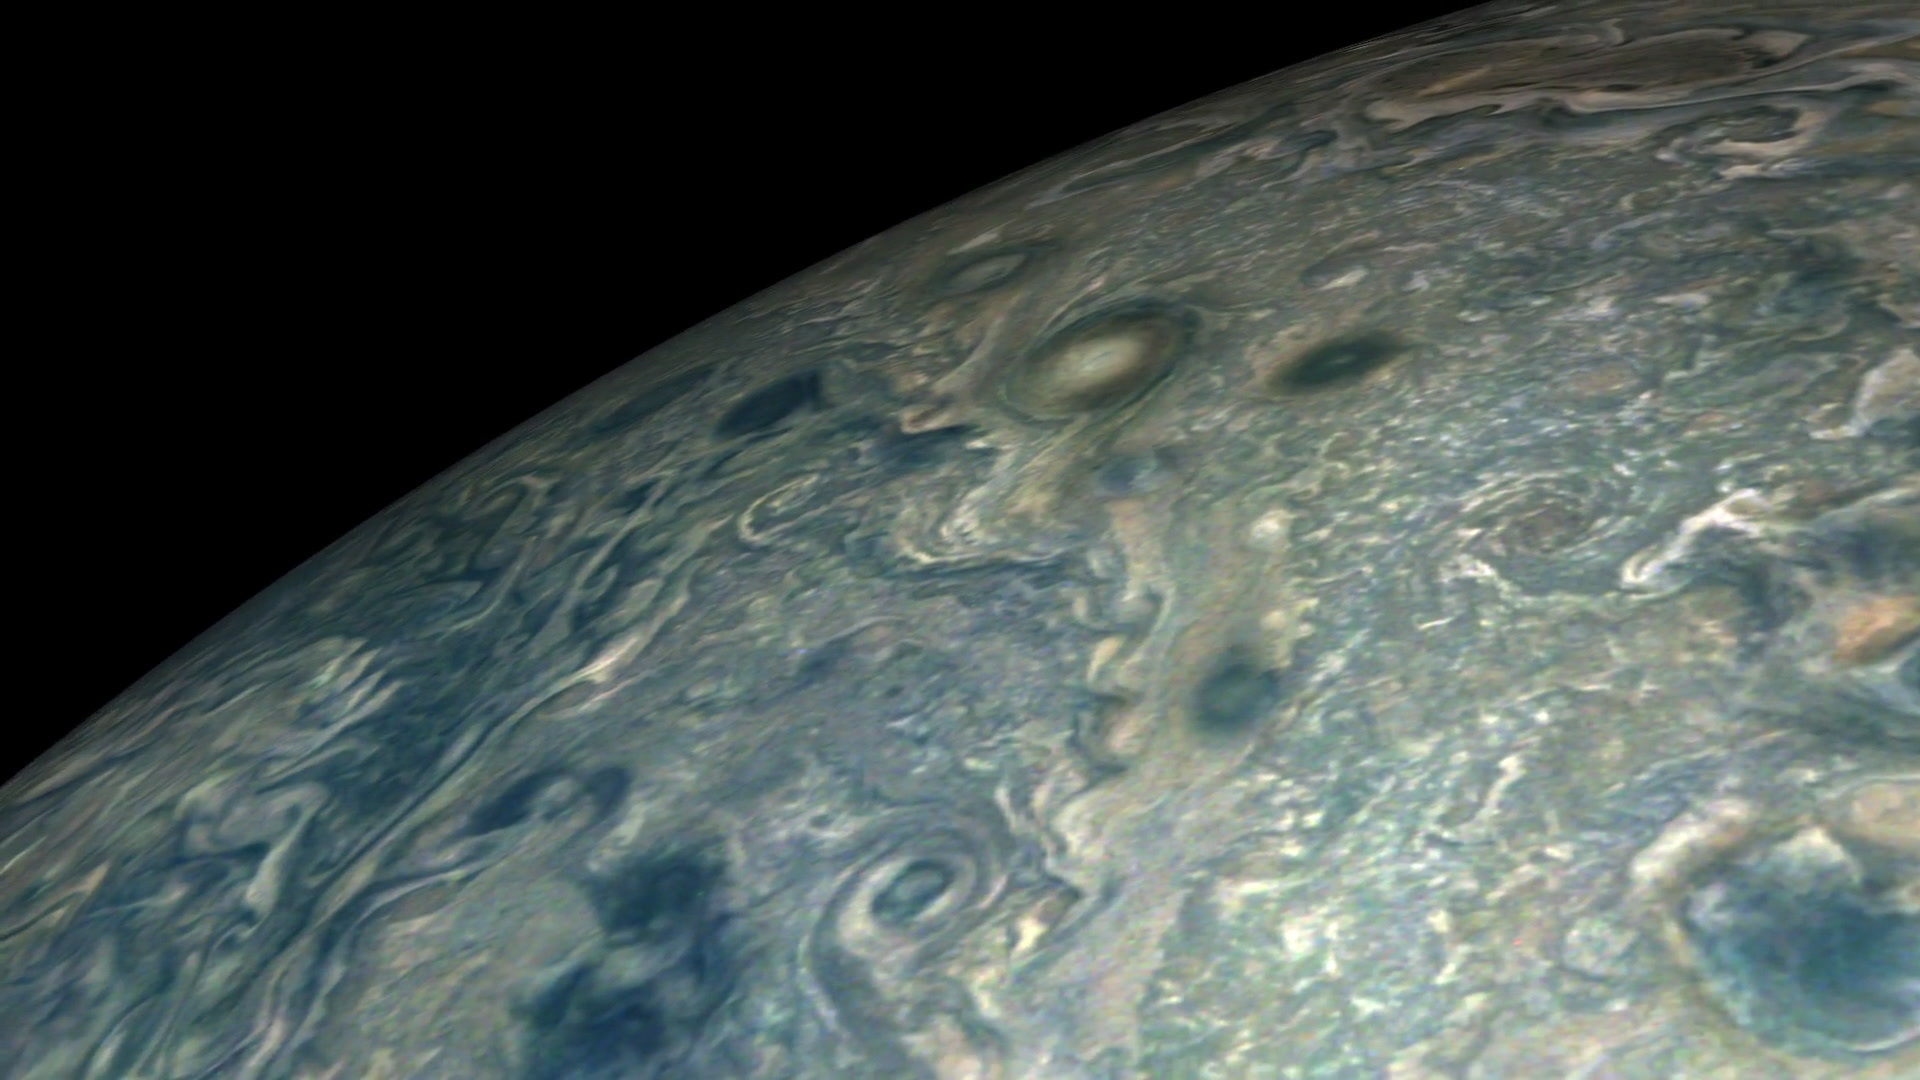 Vangelis: Jupiter fly-over - Juno’s Perijove 12